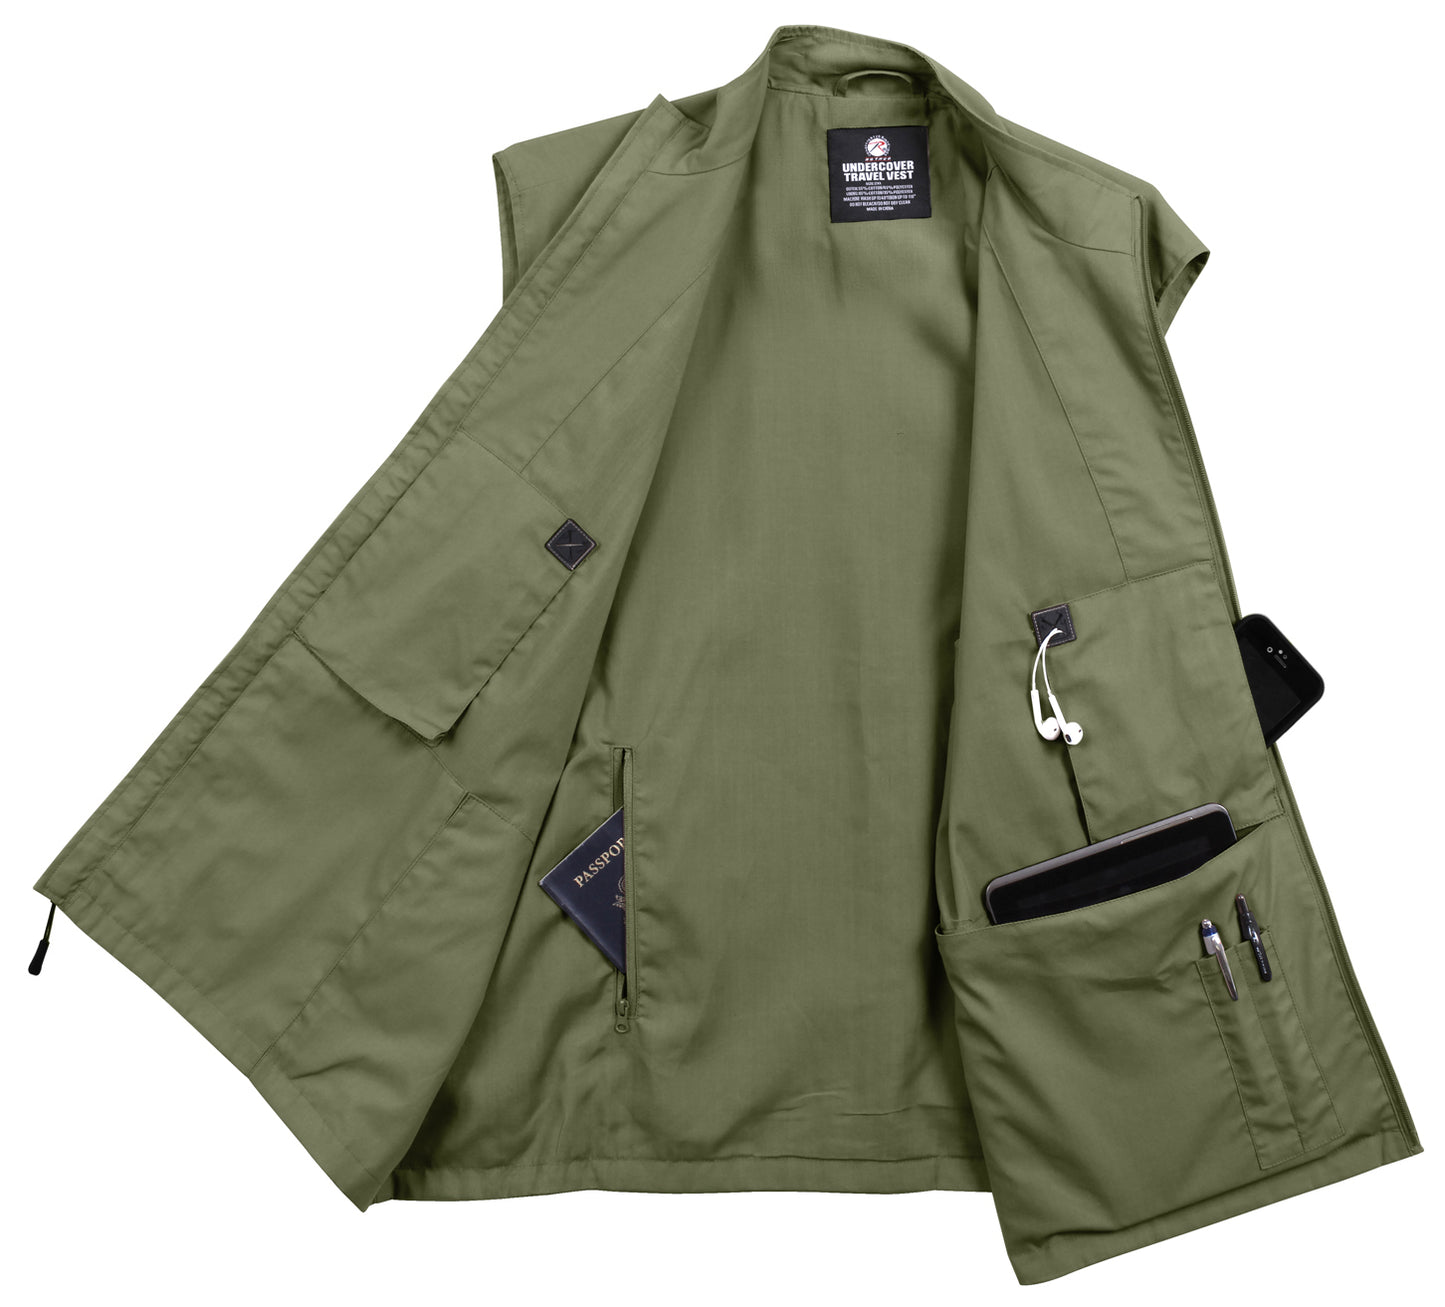 Olive Drab Undercover Travel Vest - Men's 12 Pocket Tactical Vest Rothco